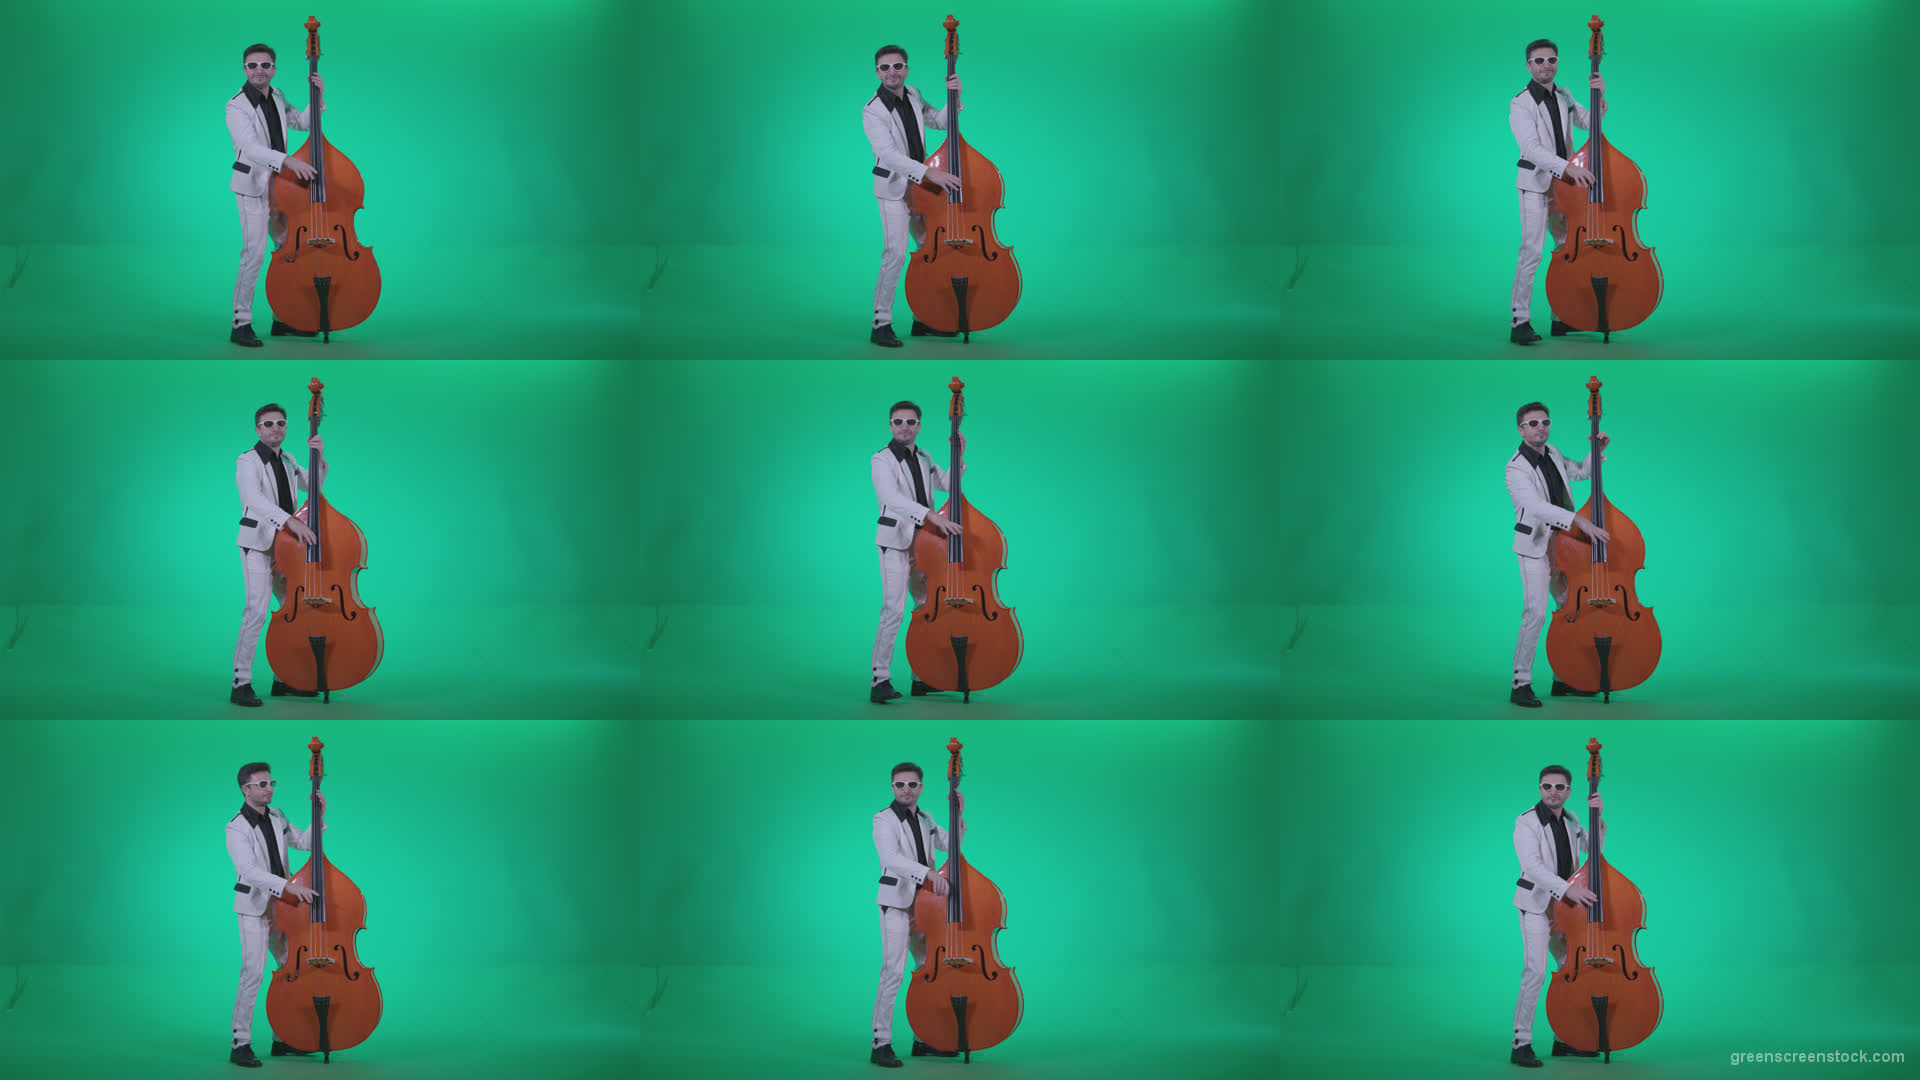 Contrabass-Jazz-Performer-j10-Green-Screen-Video-Footage Green Screen Stock